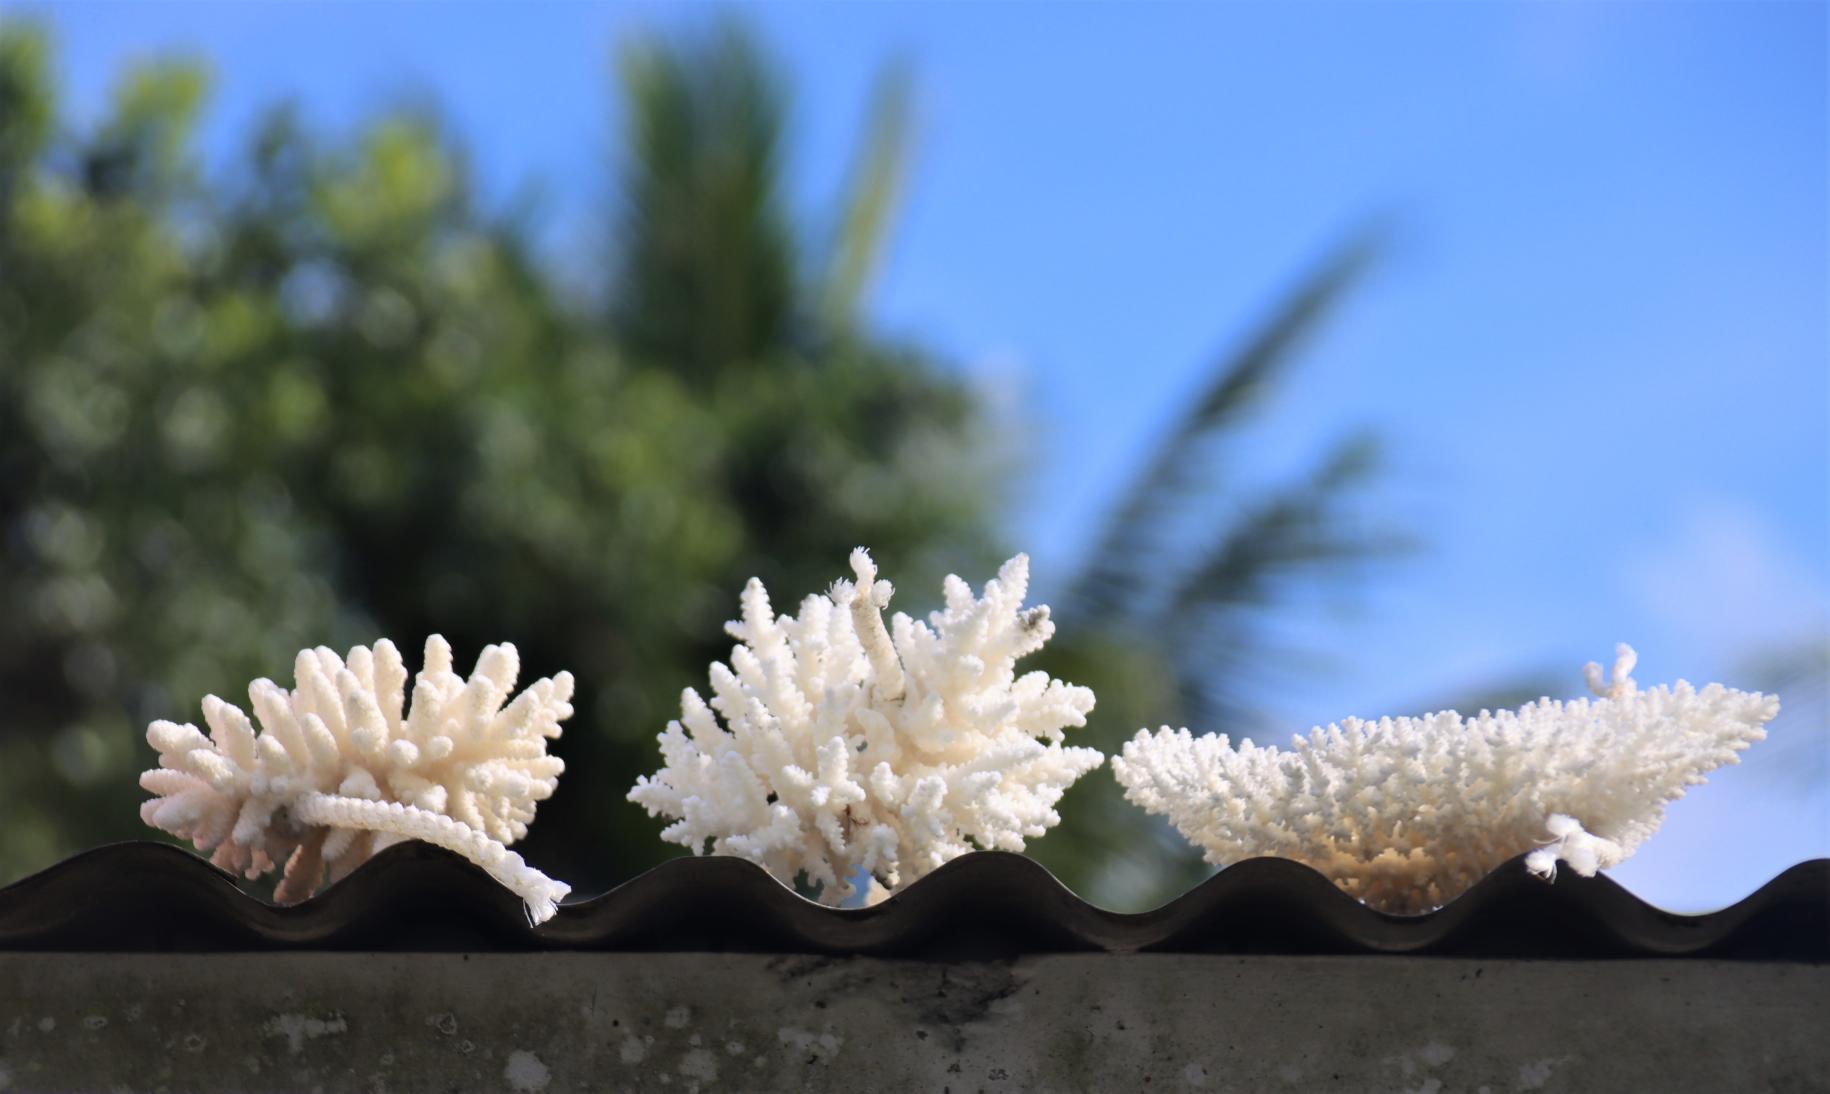 斐济漂白的珊瑚被晒干